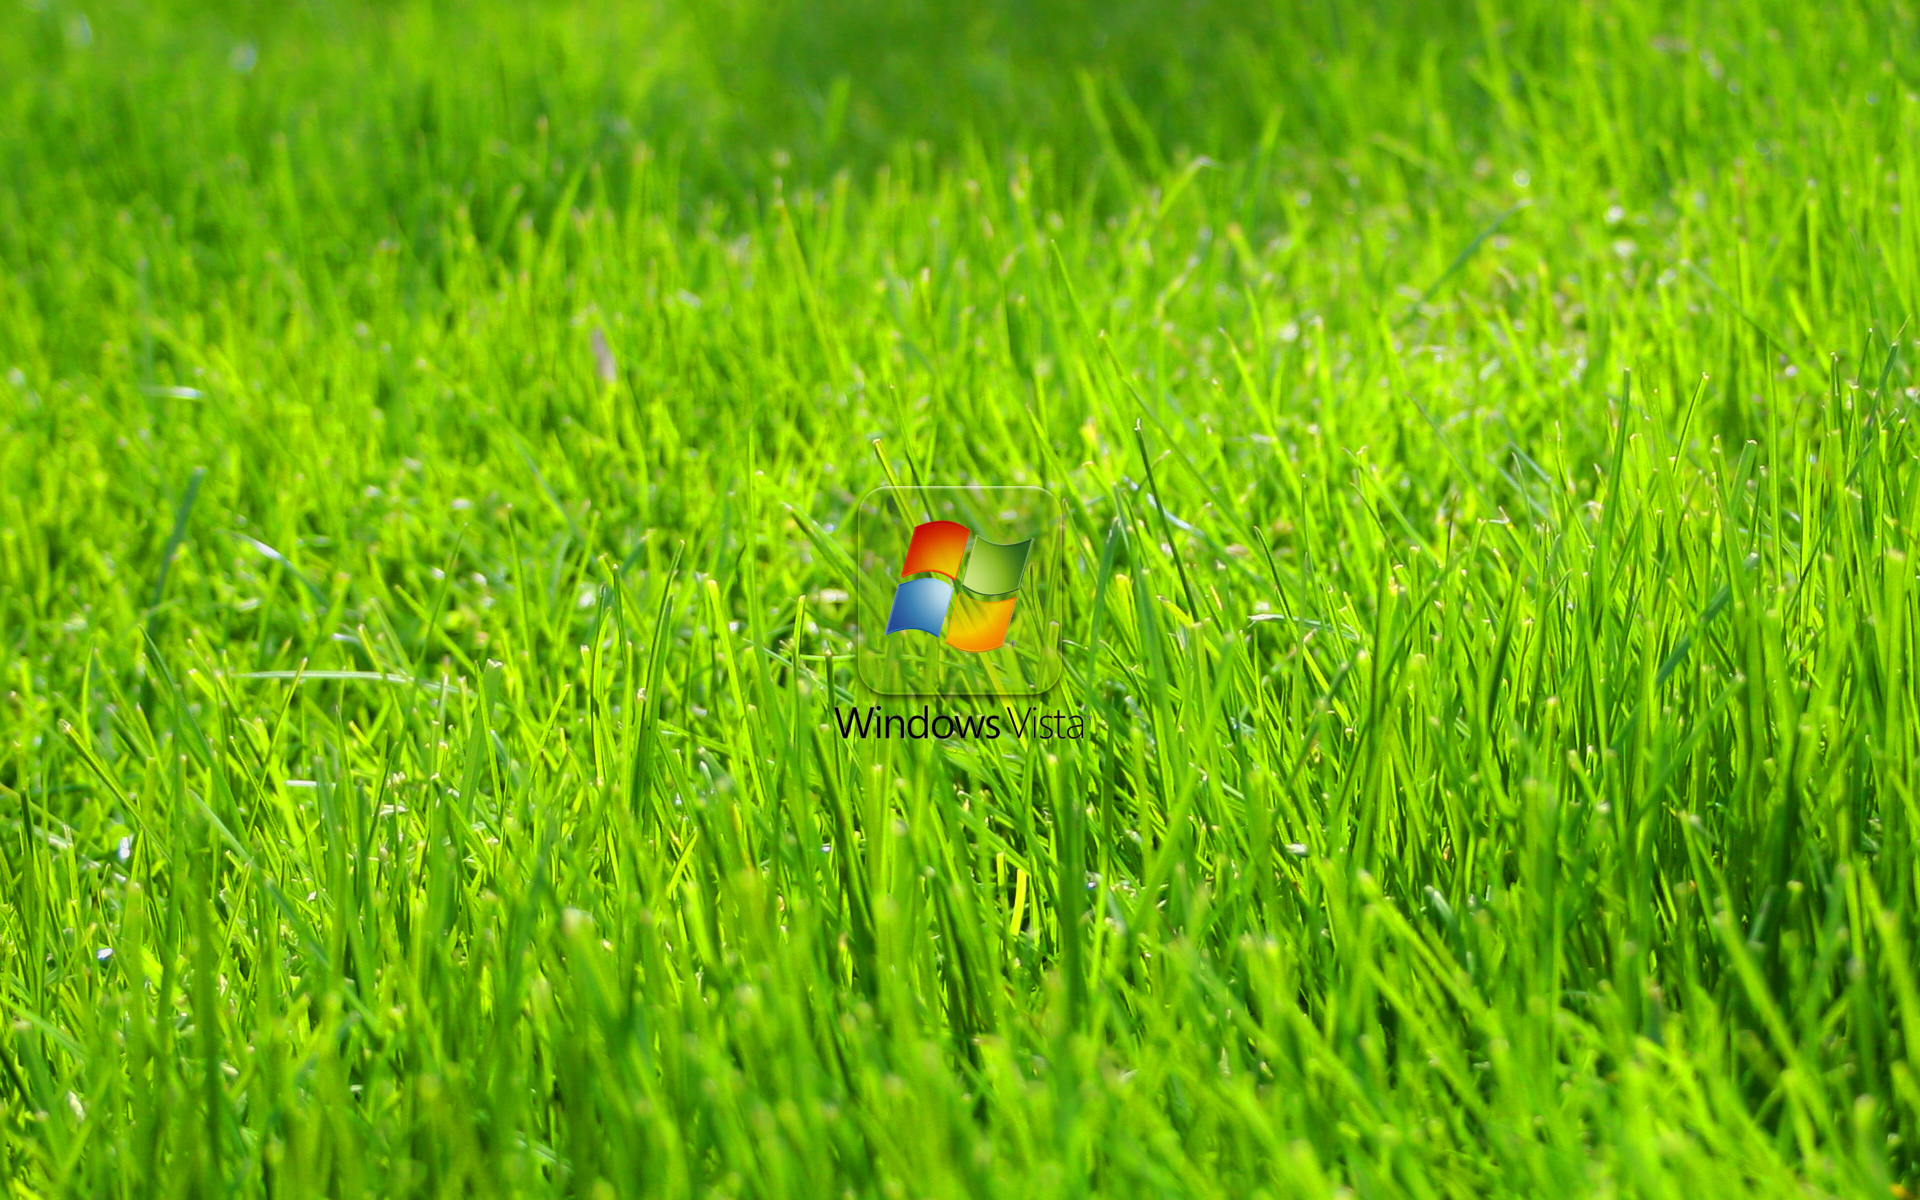 Windows Vista Green Grass Wallpaper Geekpedia